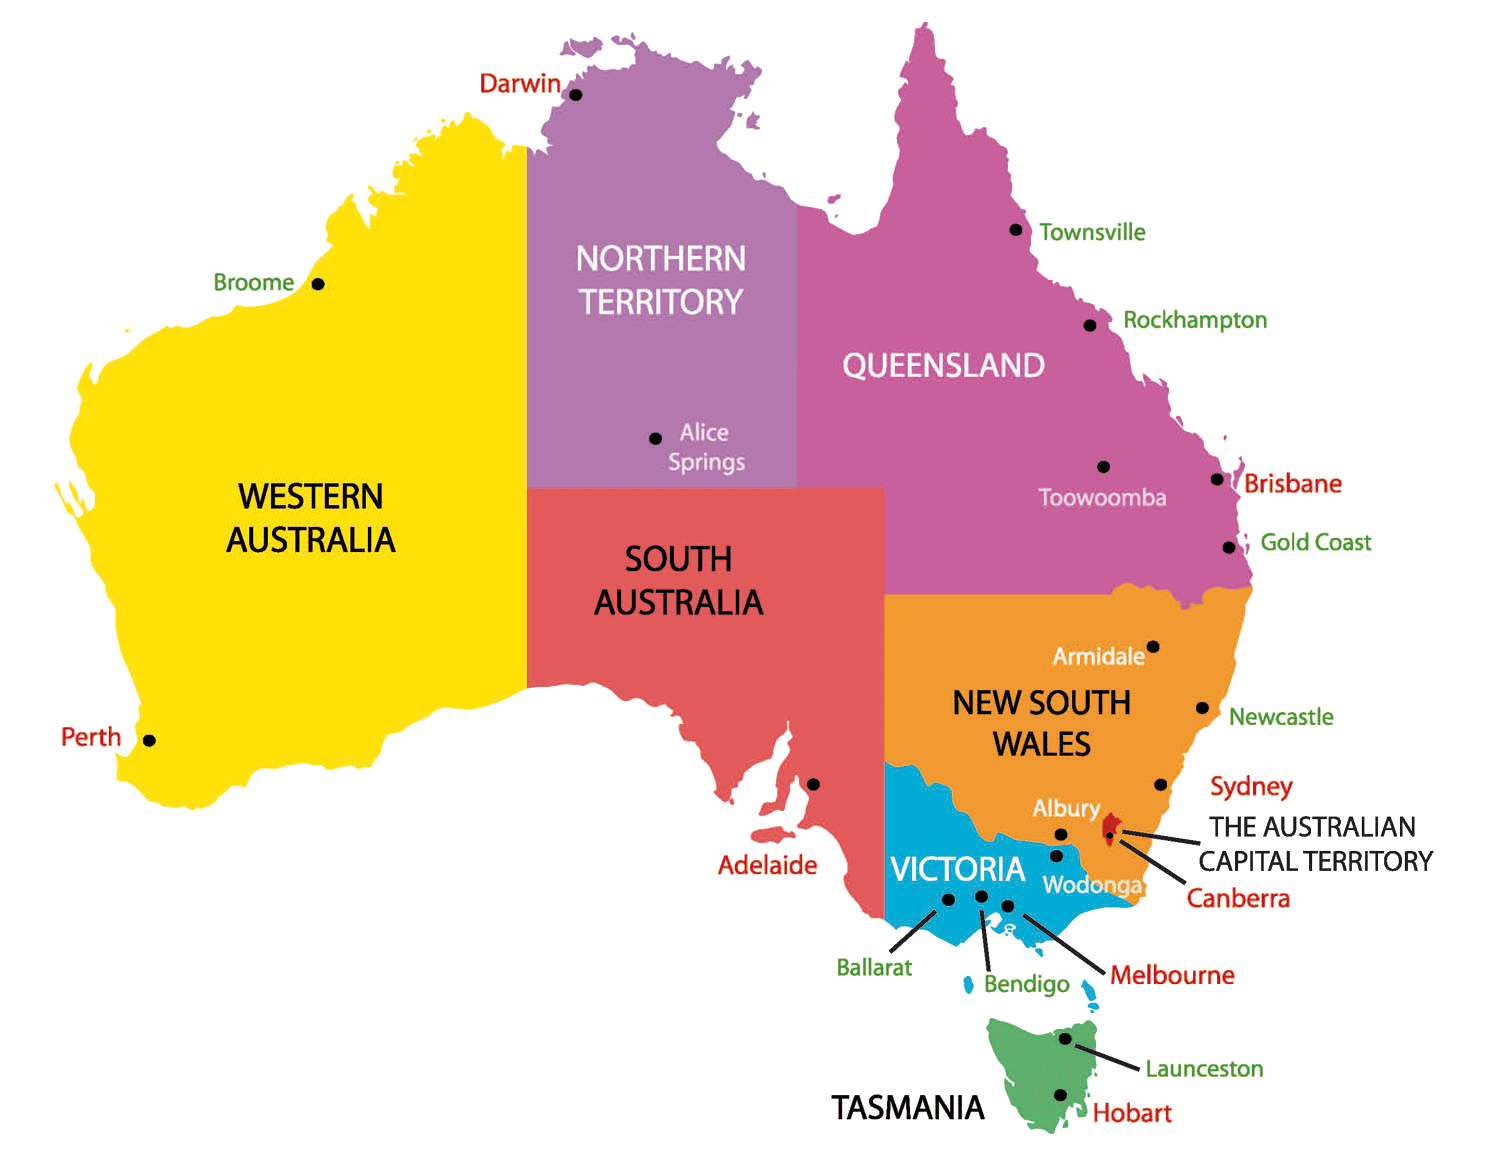 Đất nước Australia: Thăm quan và khám phá sự phong phú của đất nước Australia, nơi có những bãi biển tuyệt đẹp, sa mạc, rừng nhiệt đới và những cảnh quan địa chất độc đáo.